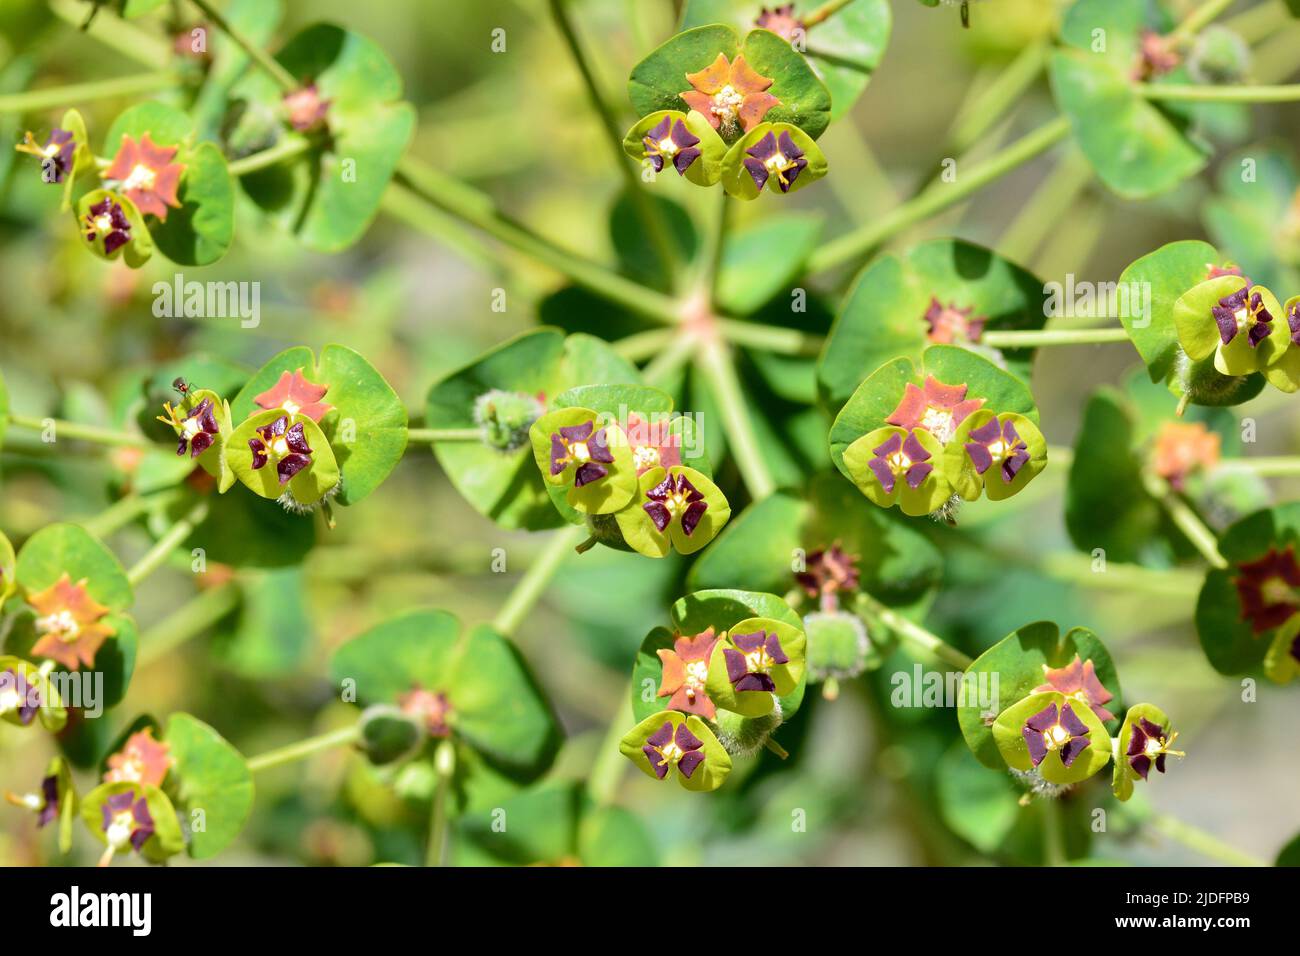 Detalle de una planta de euphorbia characias en primavera Stock Photo